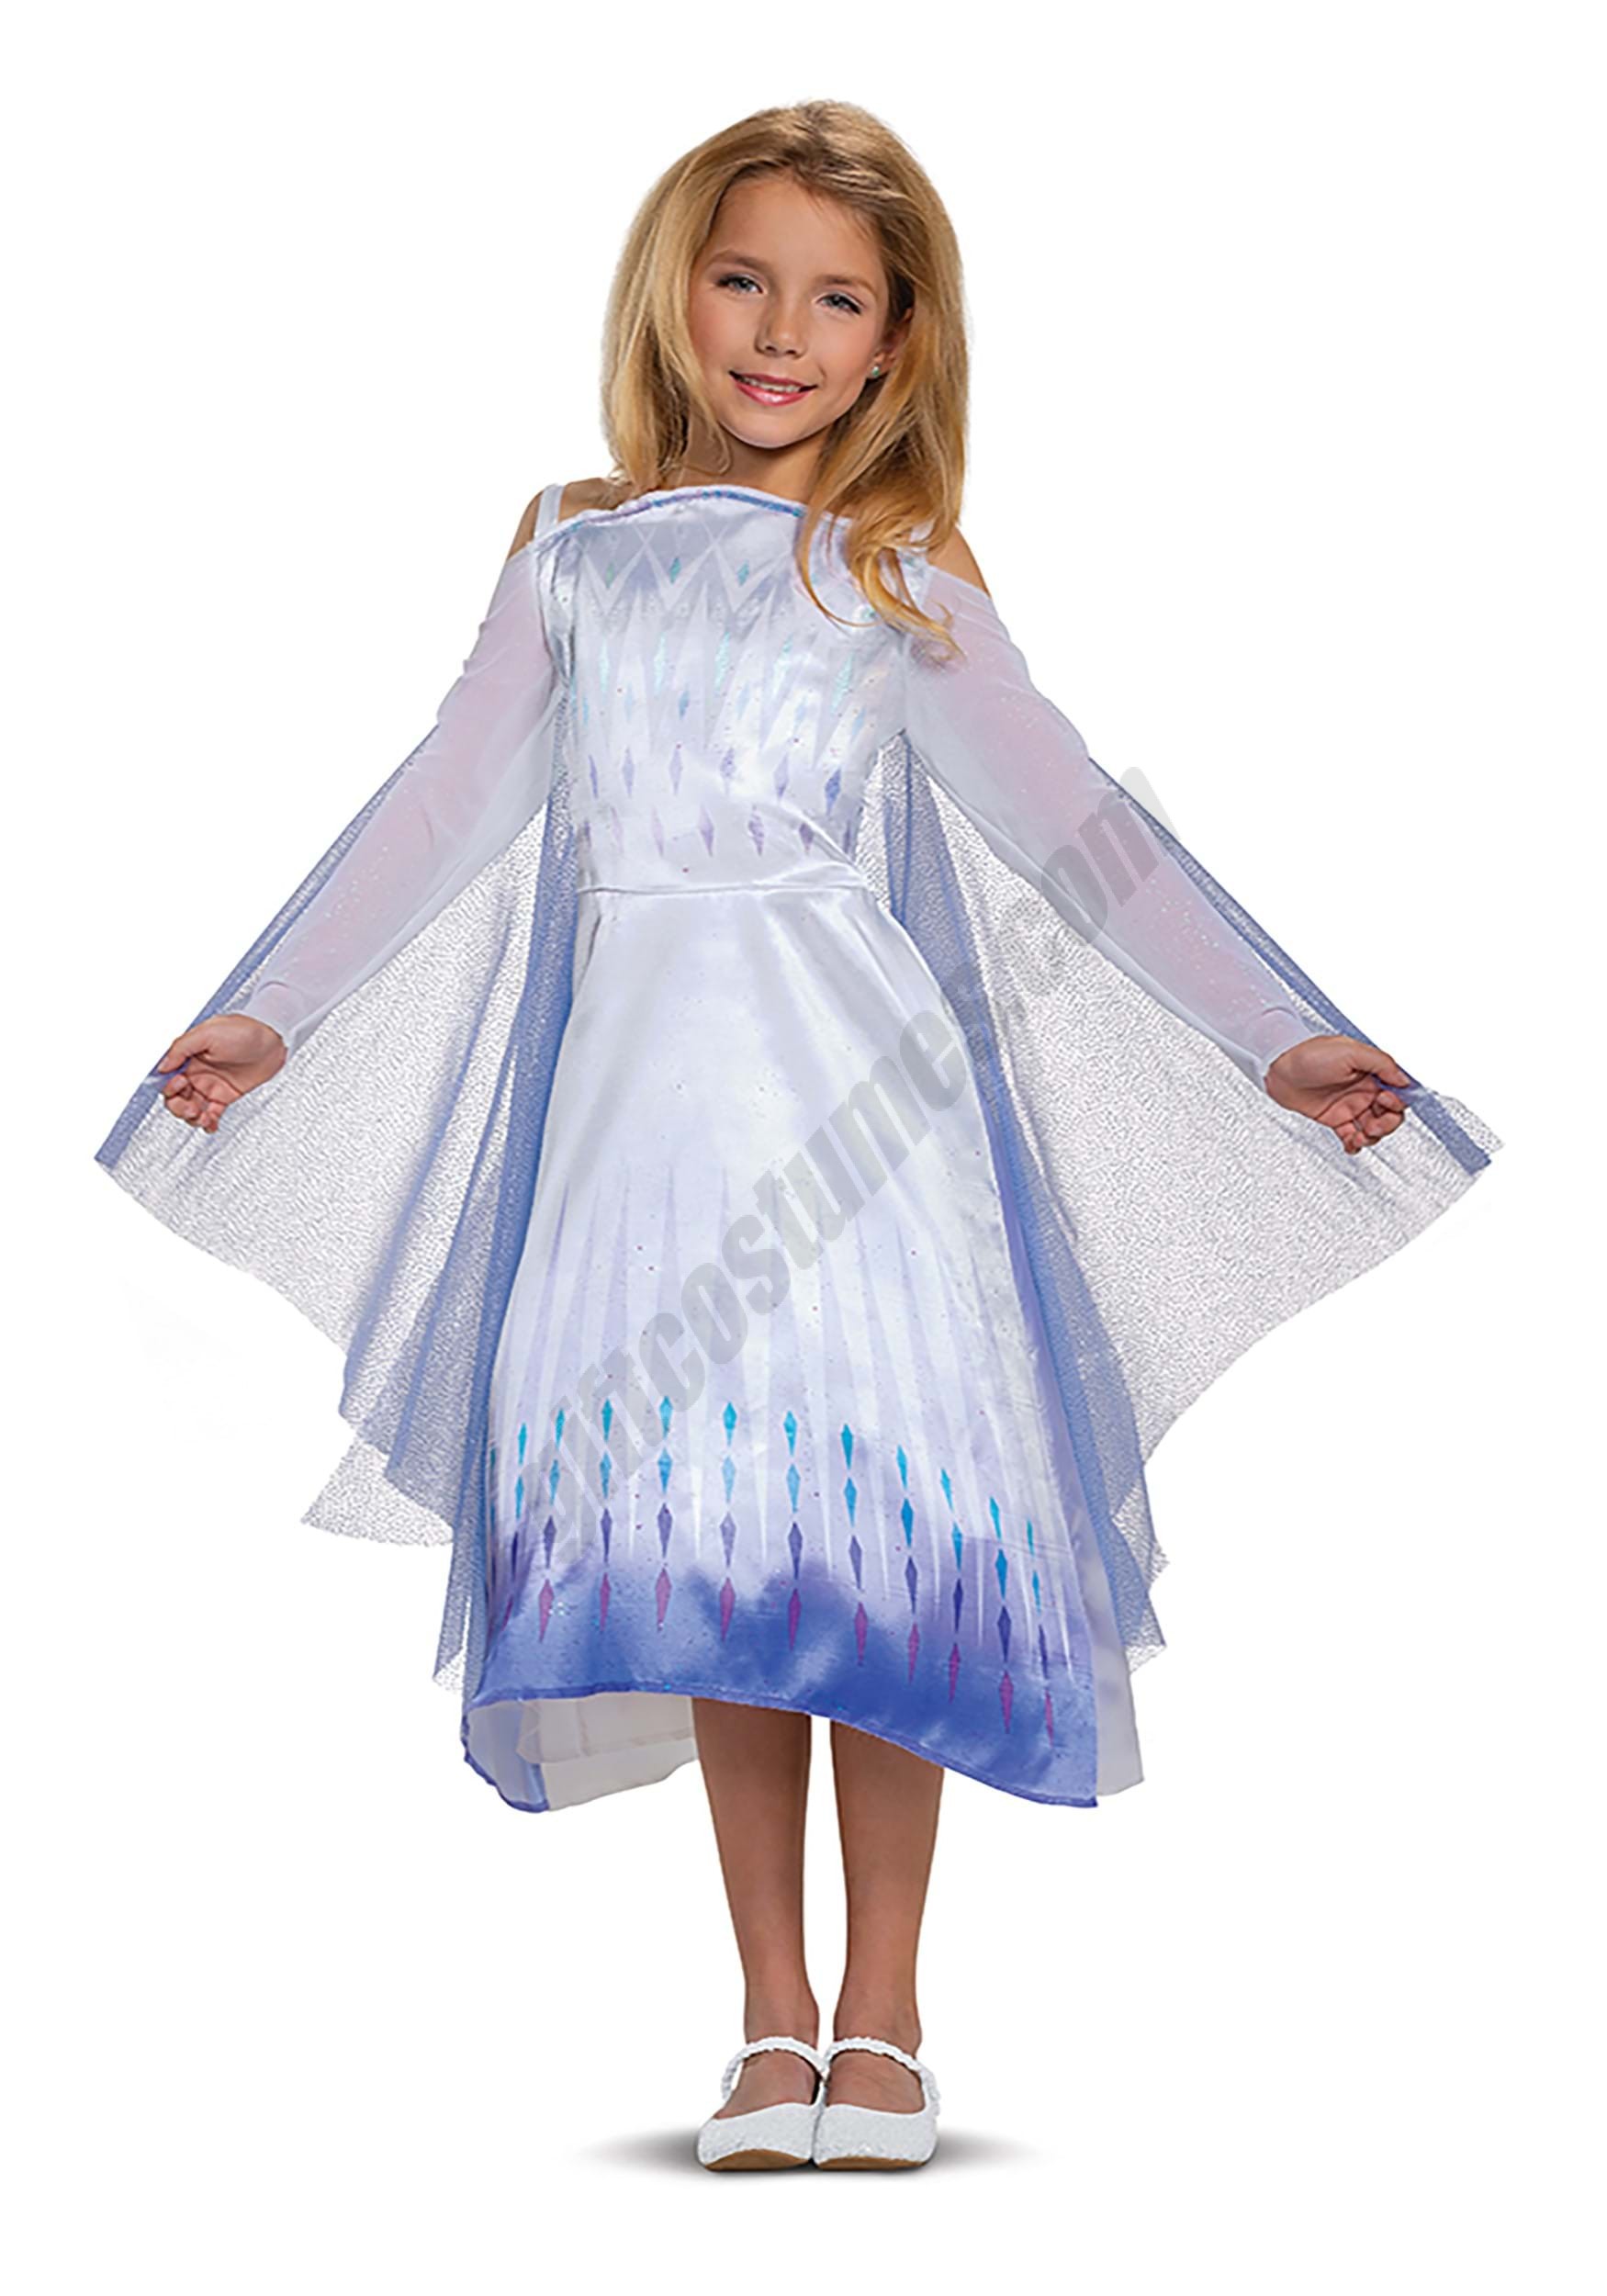 Frozen Snow Queen Elsa Classic Costume for Kids Promotions - Frozen Snow Queen Elsa Classic Costume for Kids Promotions